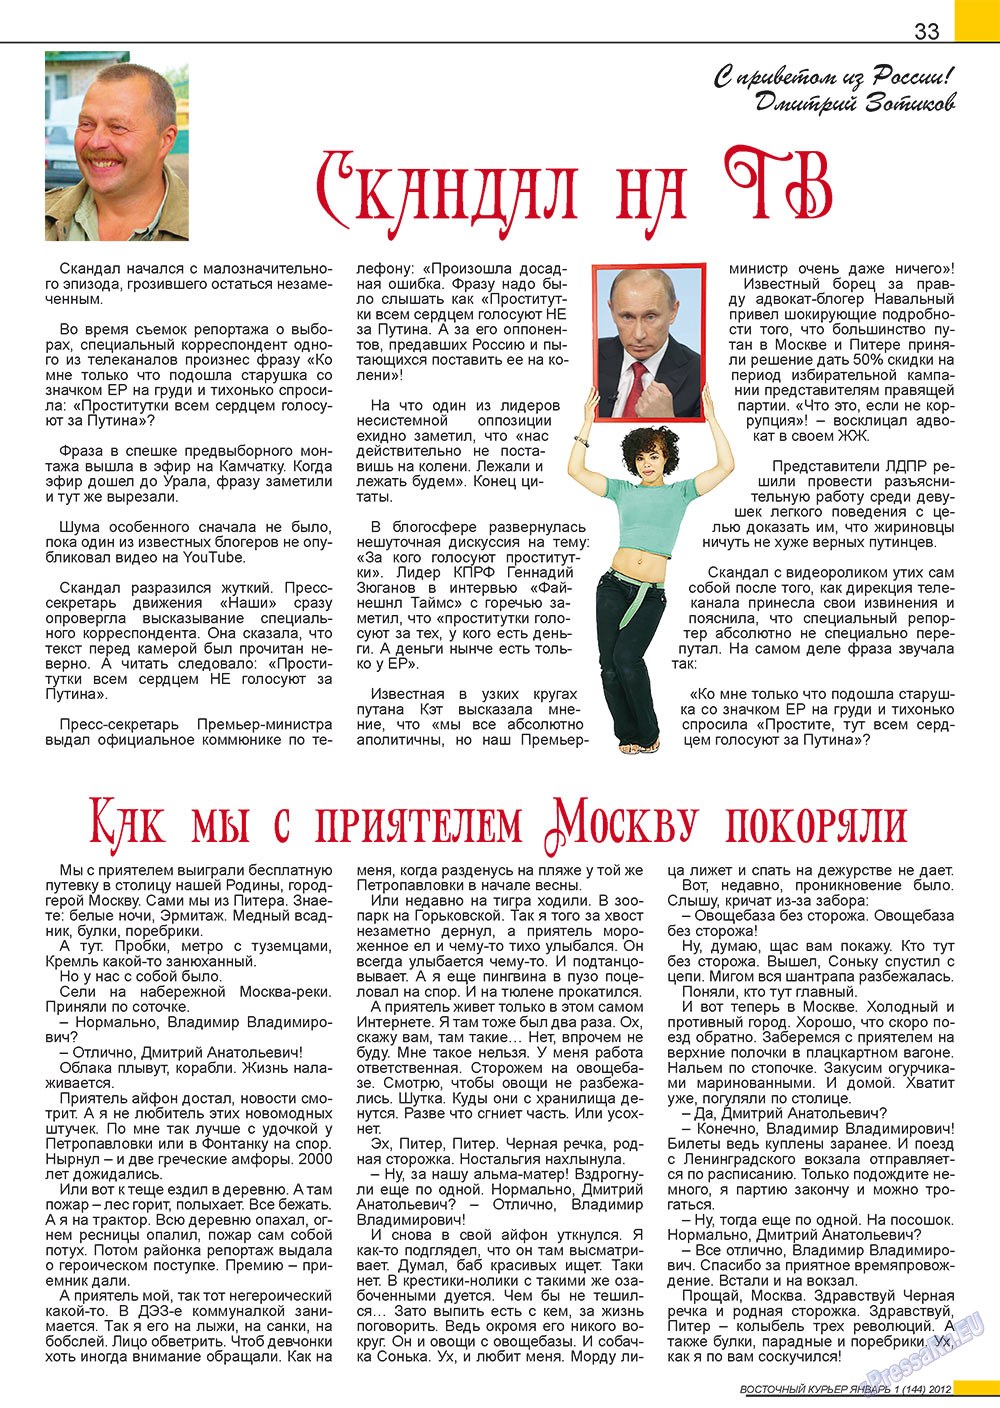 Восточный курьер, журнал. 2012 №1 стр.33